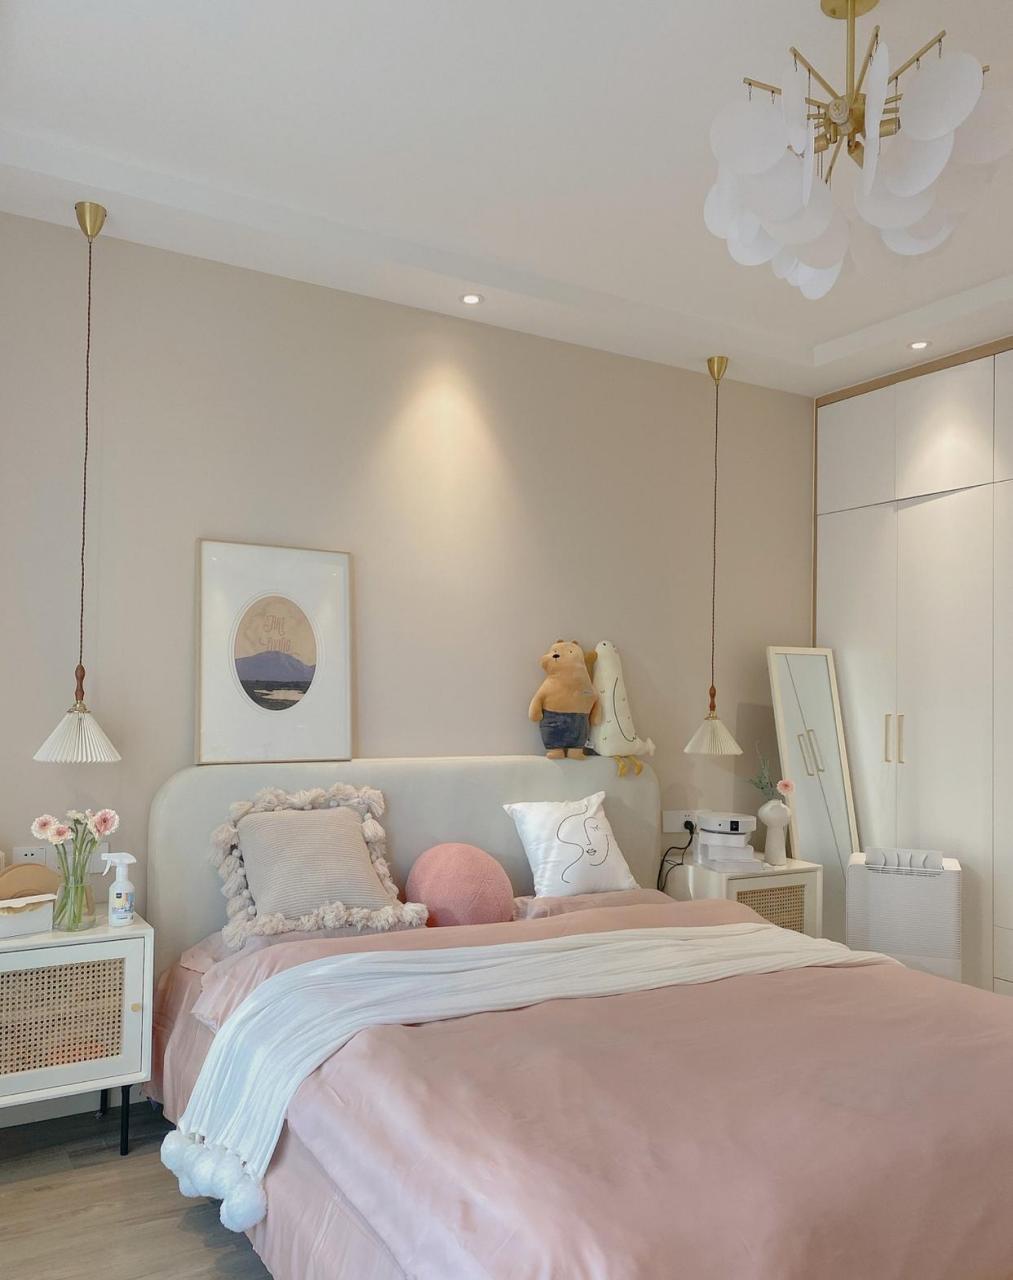 奶咖色墙漆效果很不错,打造温馨舒适的卧室  你喜欢这样的装修吗?